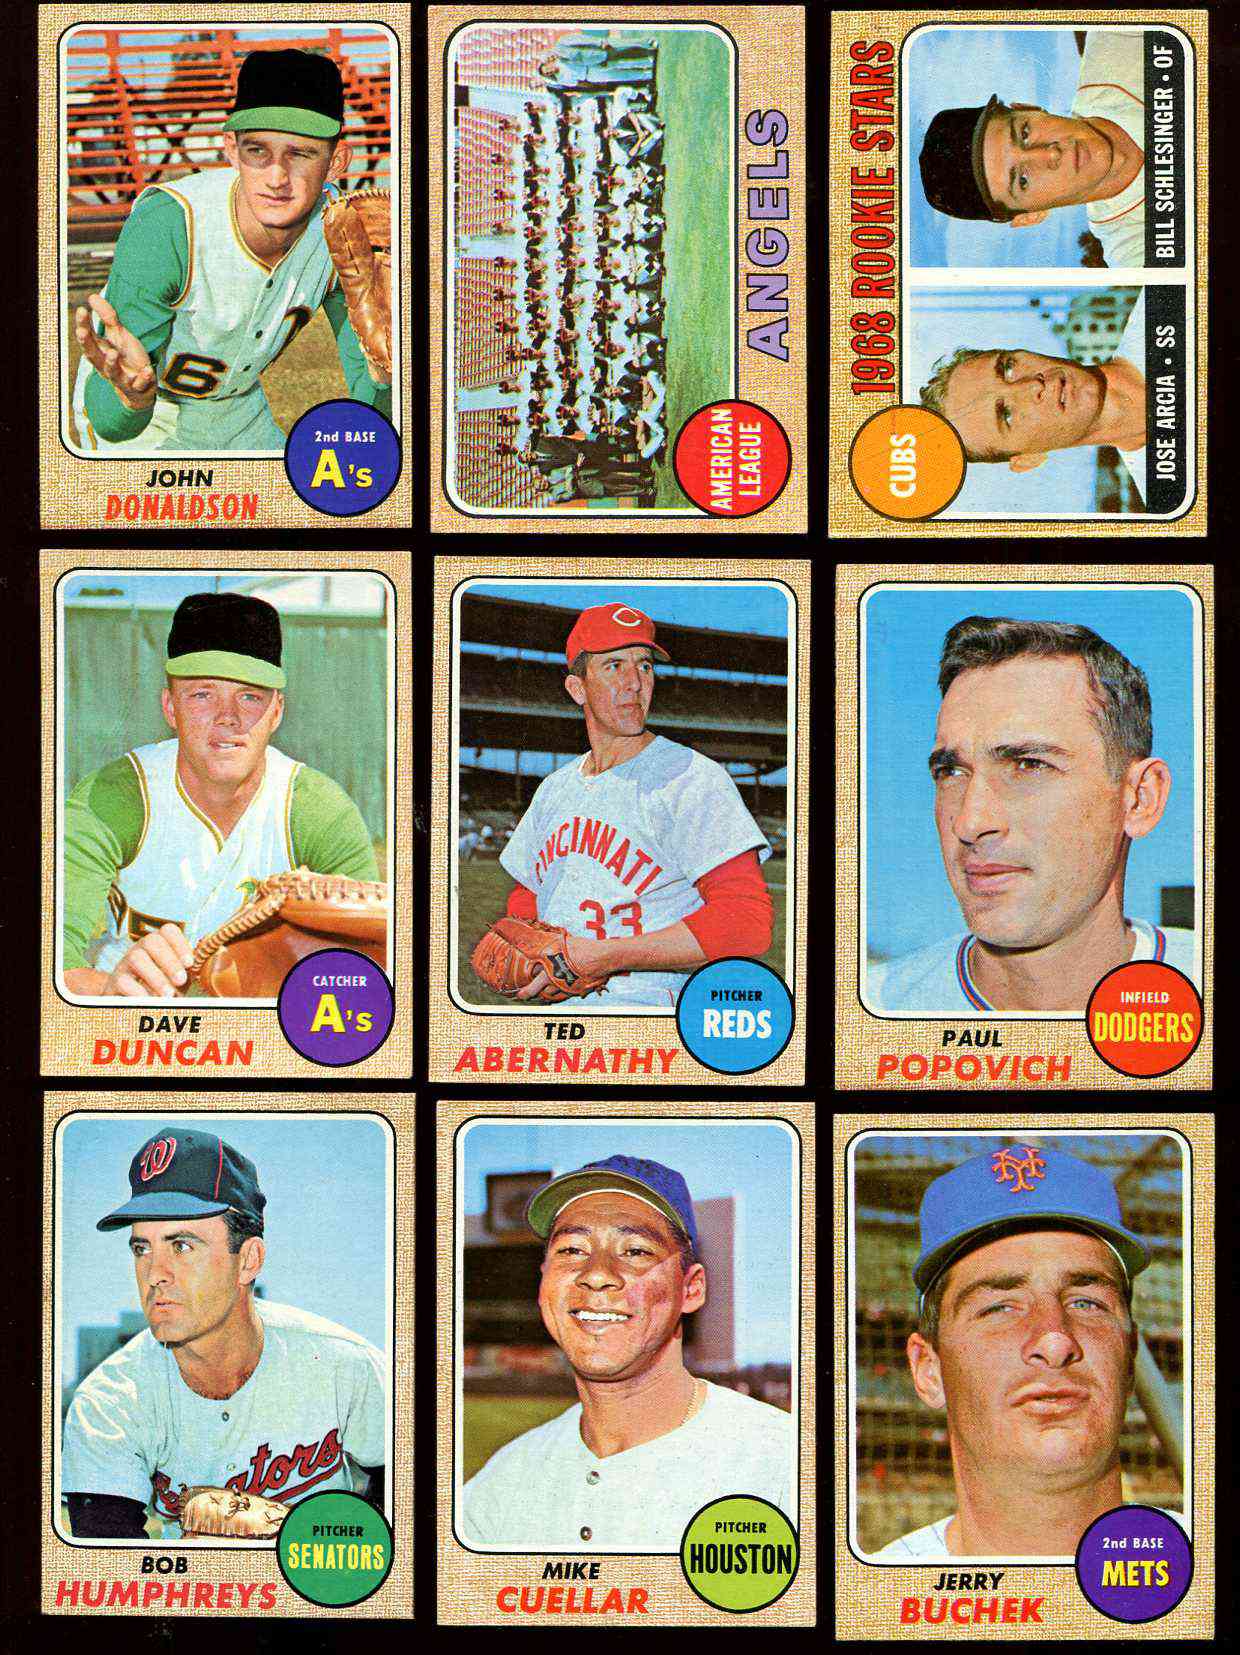 Ed Charles: (1967-1969 New York Mets) 1968 Topps baseball card